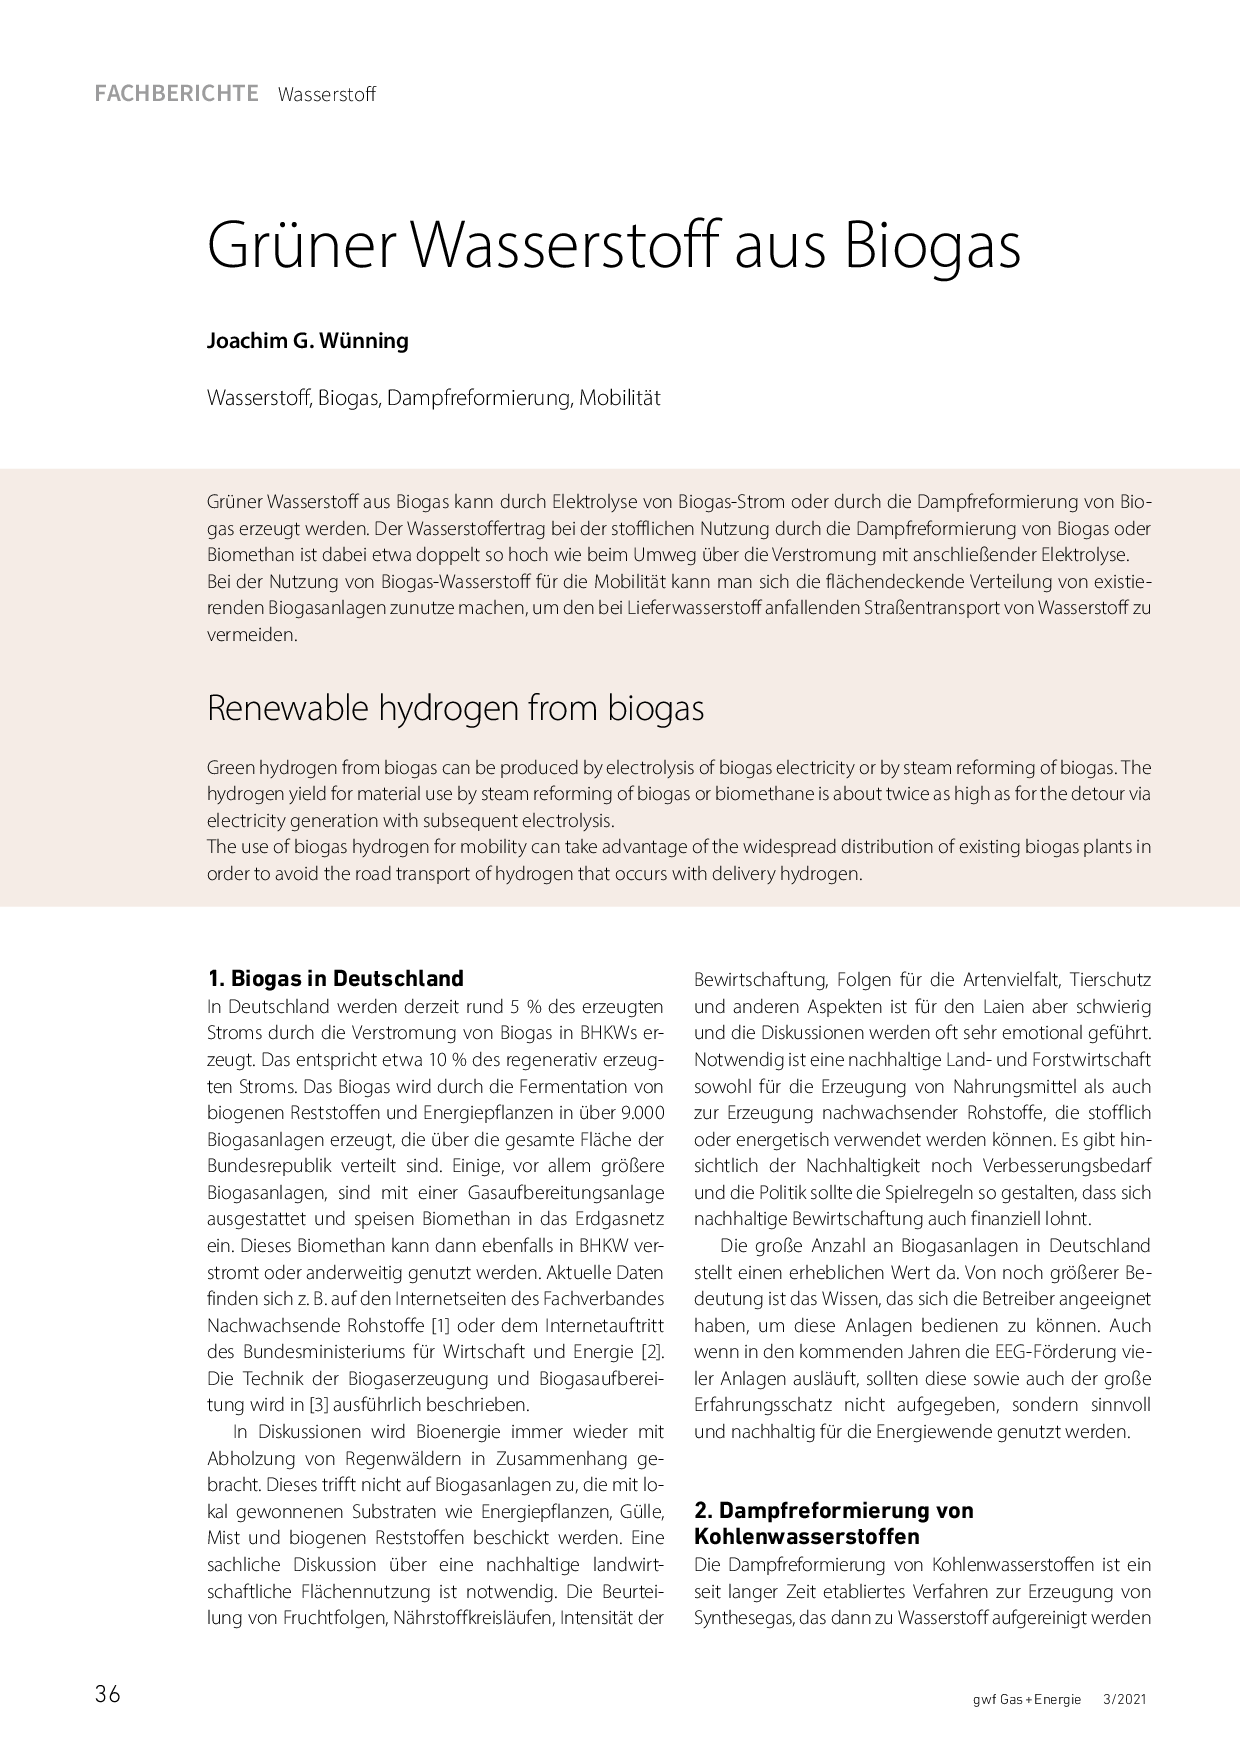 Grüner Wasserstoff aus Biogas